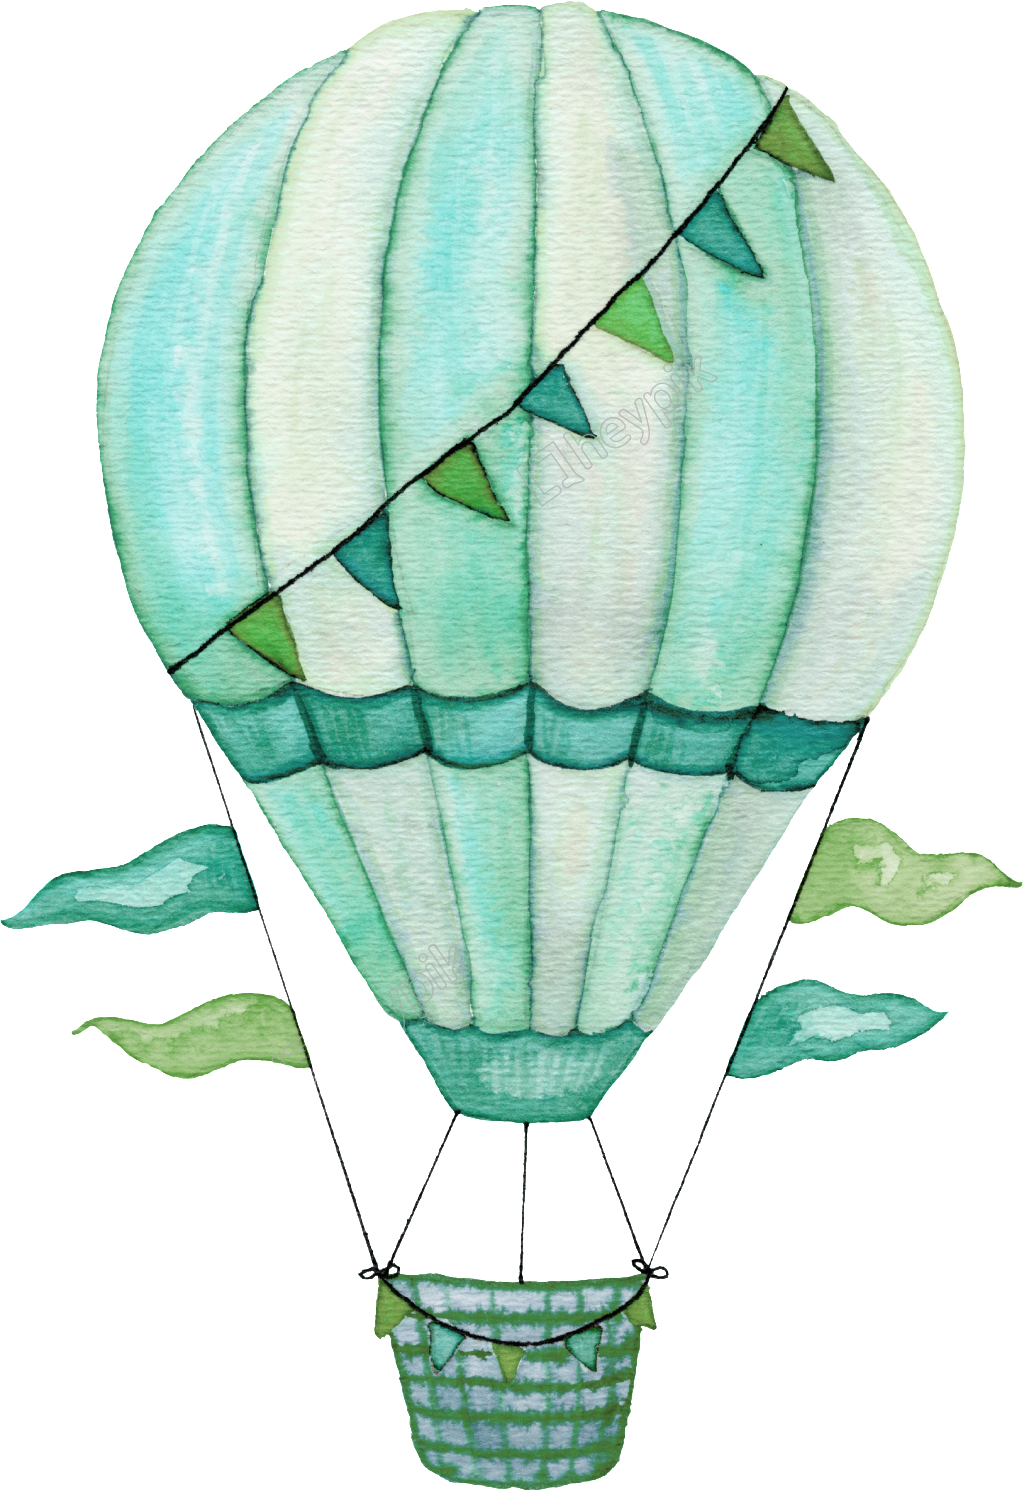 Air Balloon PNG Clipart